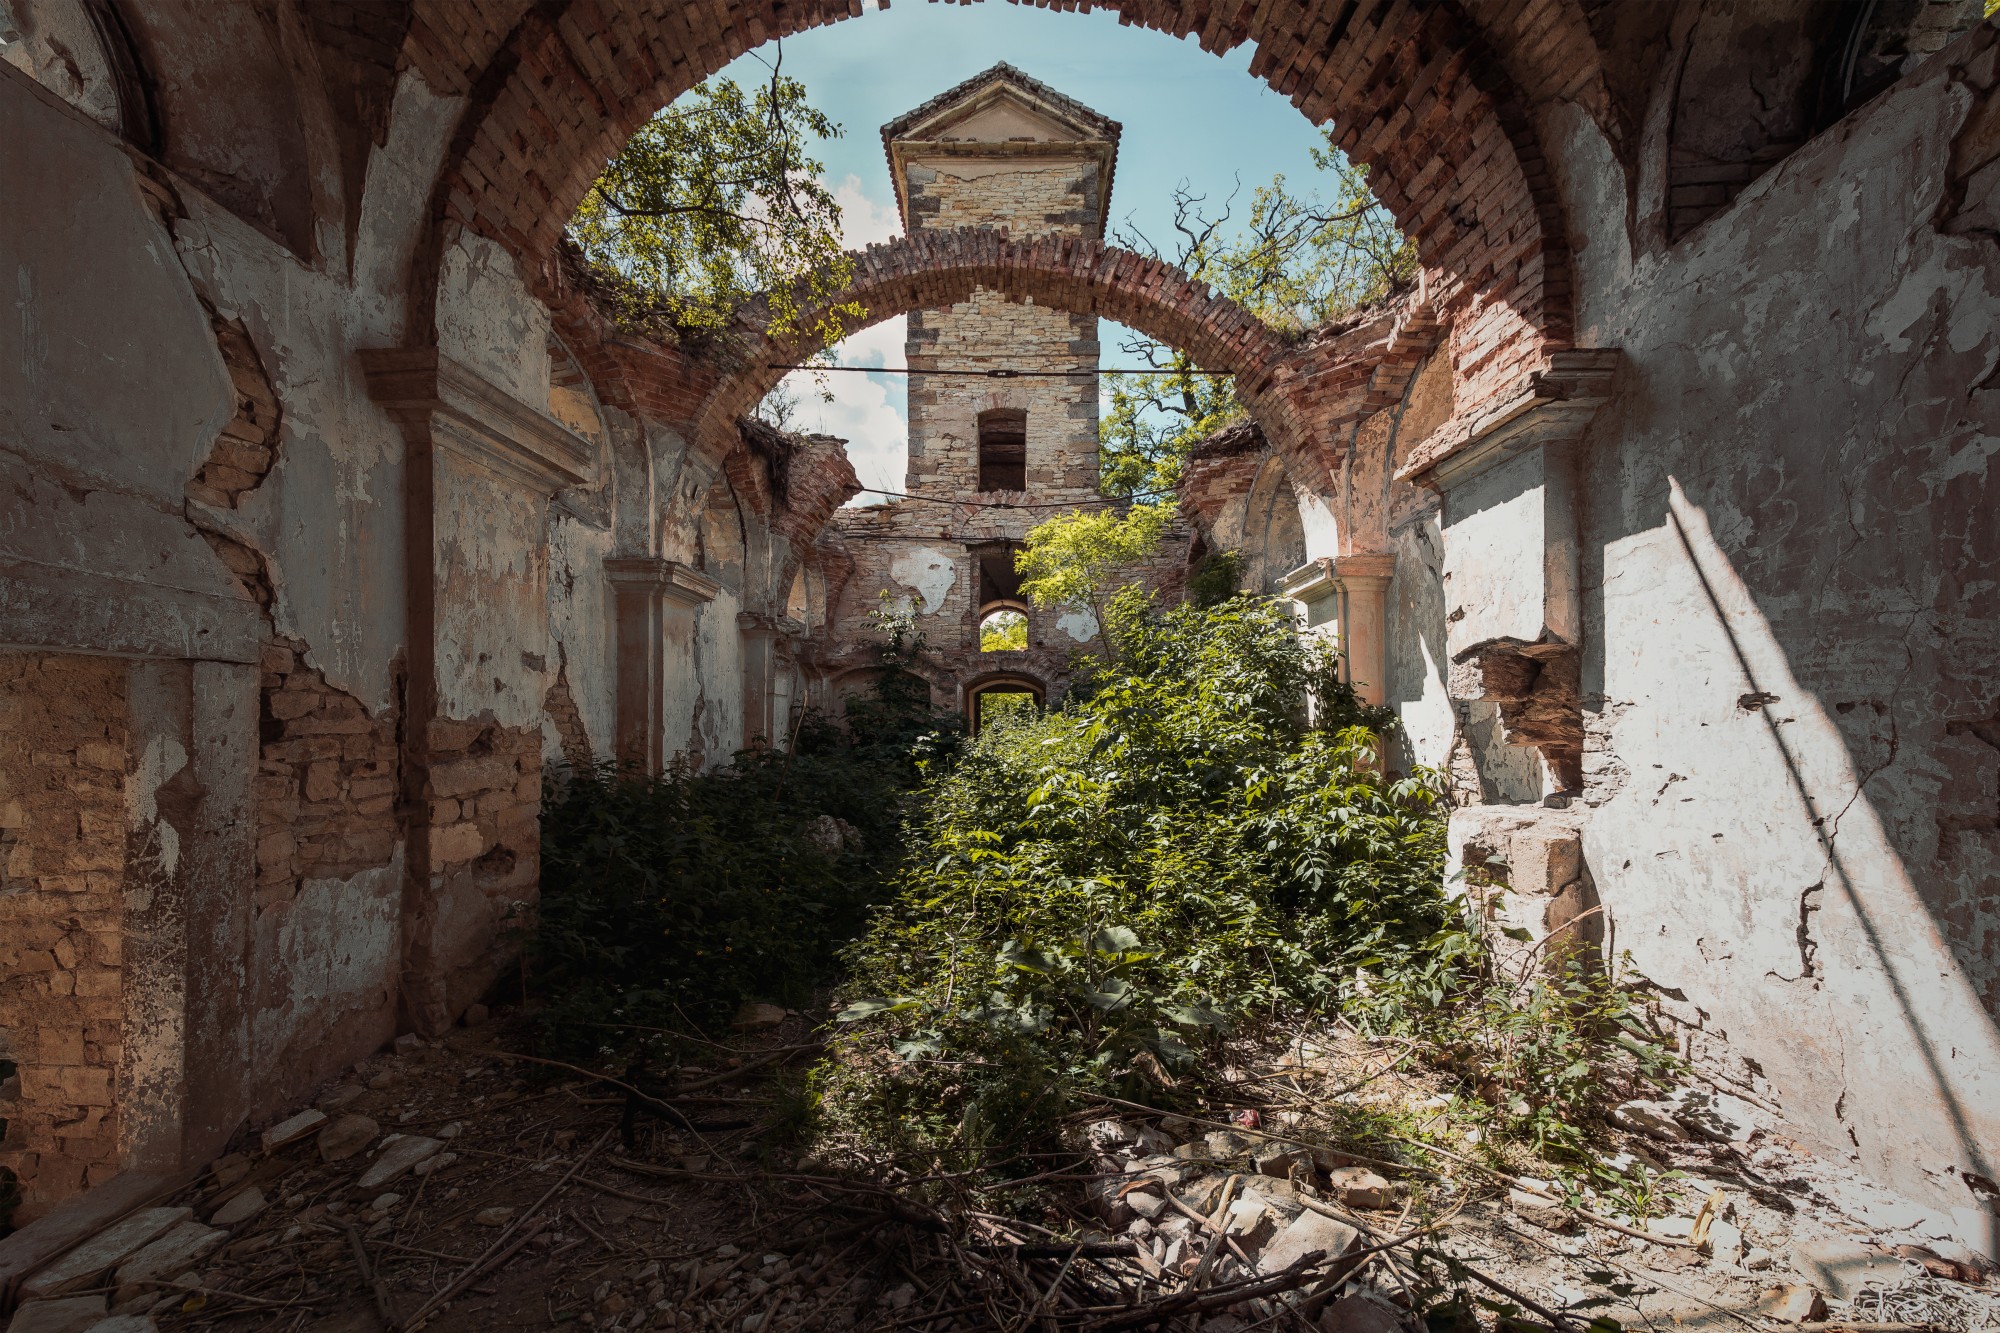 Fotografie von Inneren einer Kirchen Ruine mit offenem Dach